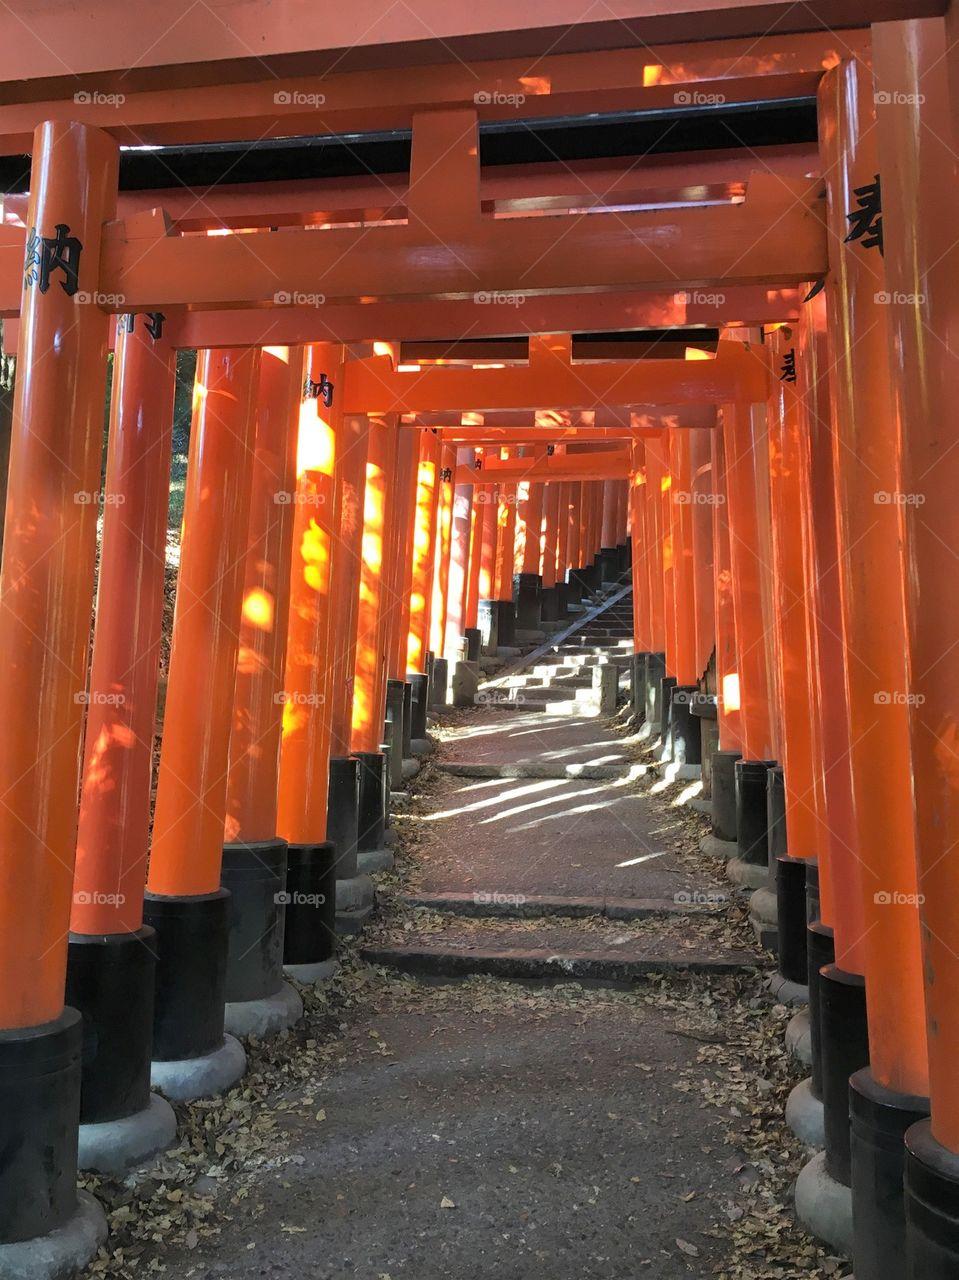 Foap.com: Fushimi Inari Shrine, Kyoto